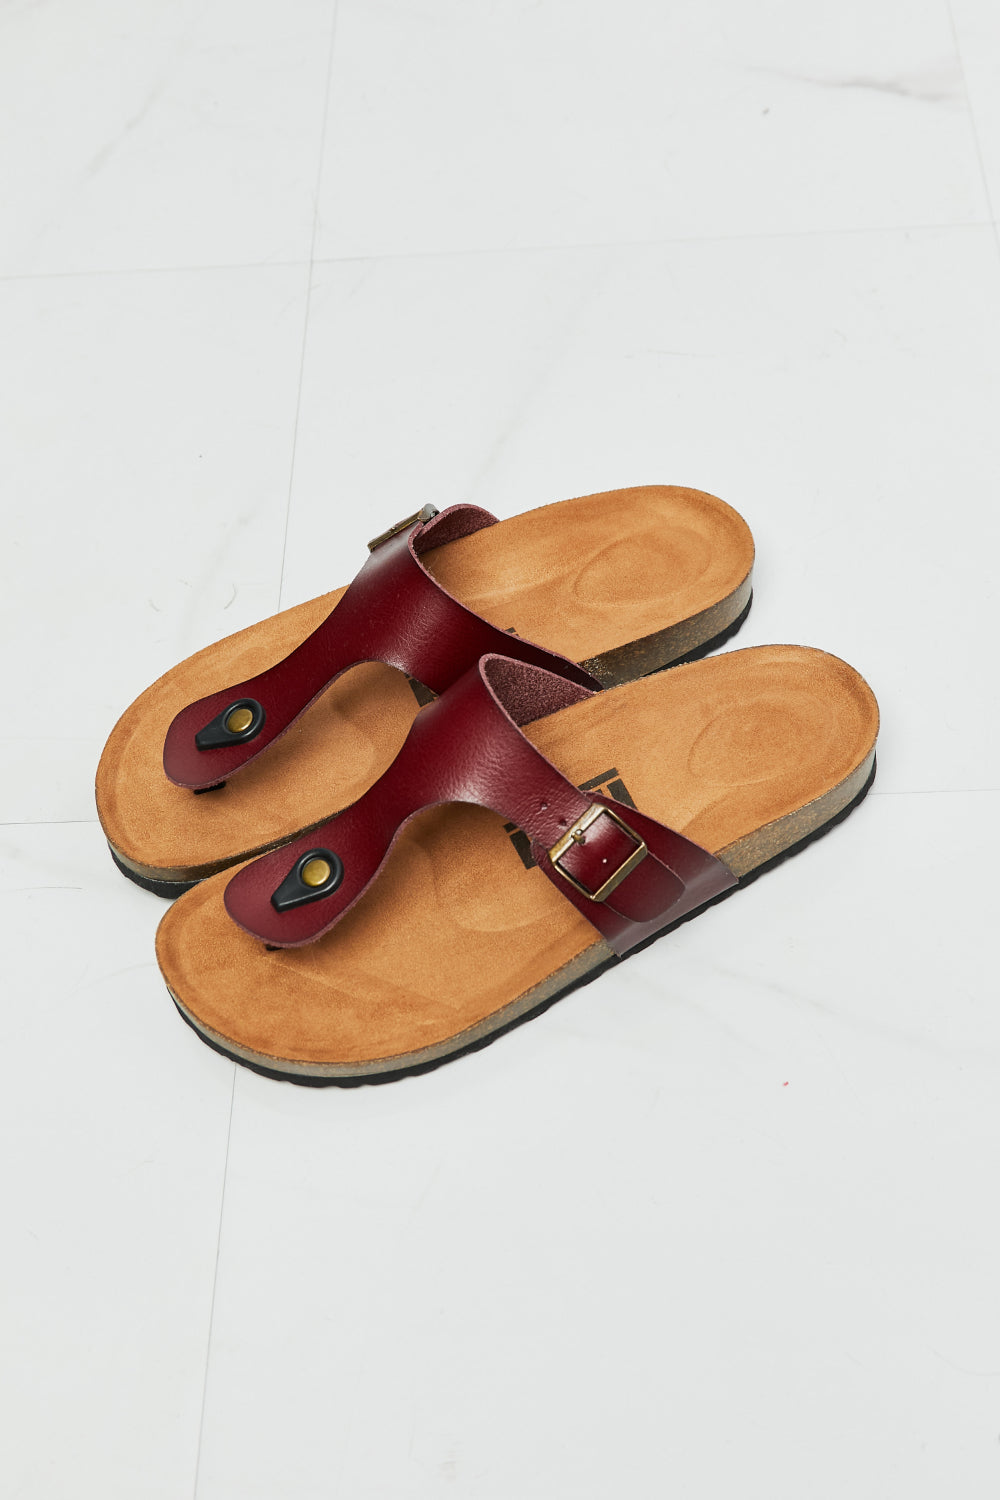 MMShoes T-Strap Flip-Flop Slide On Flat Cork Footbed Comfort Sandals in Brown Drift Away